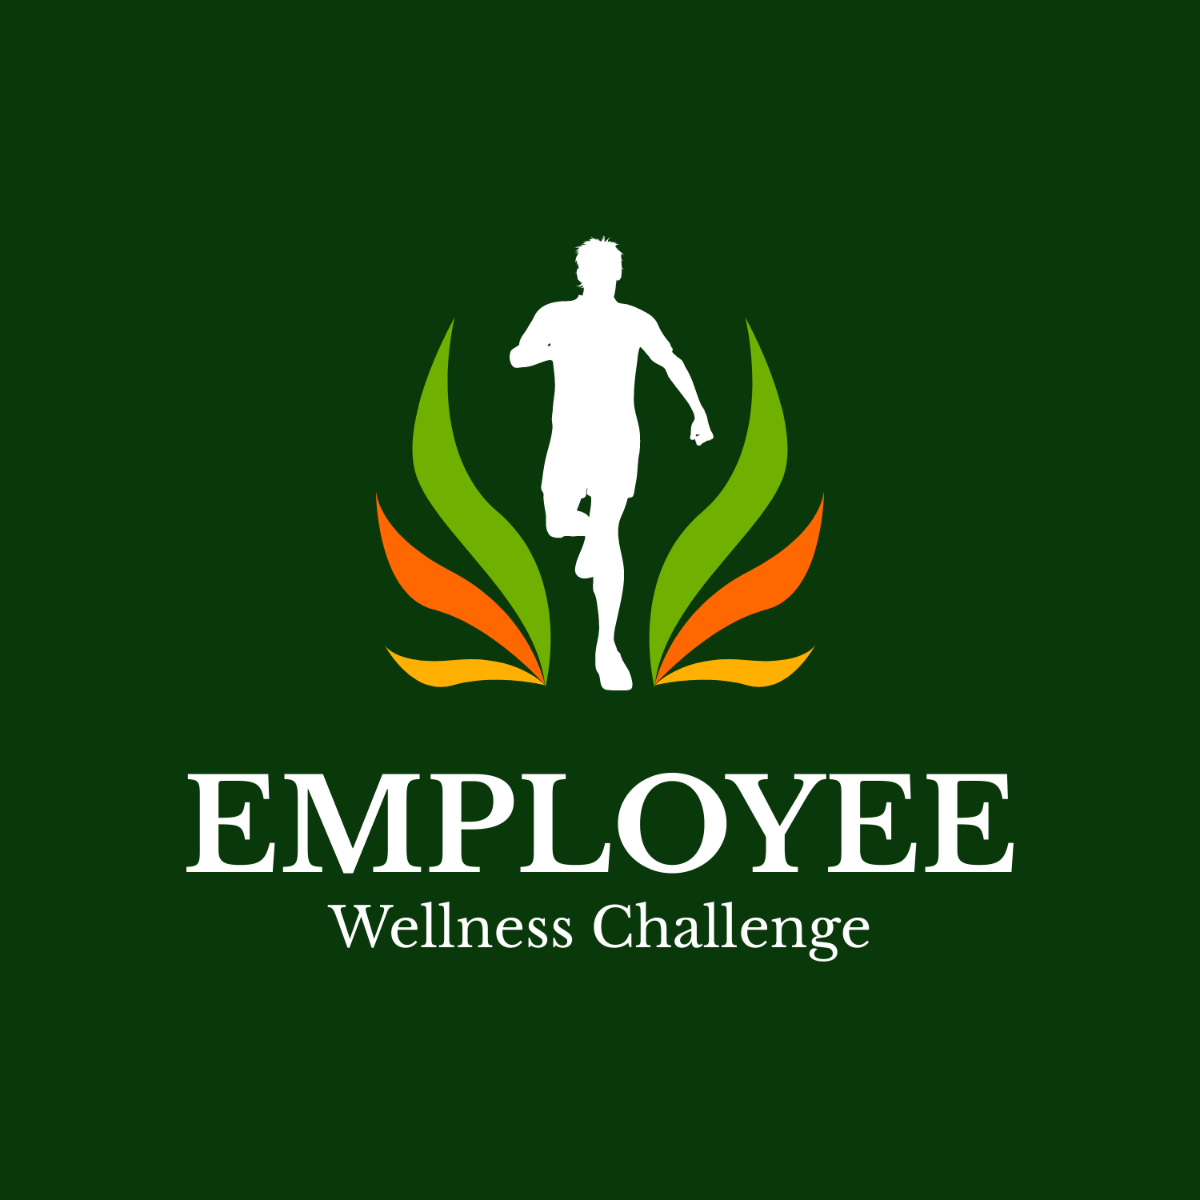 Employee Wellness Challenge Logo Template